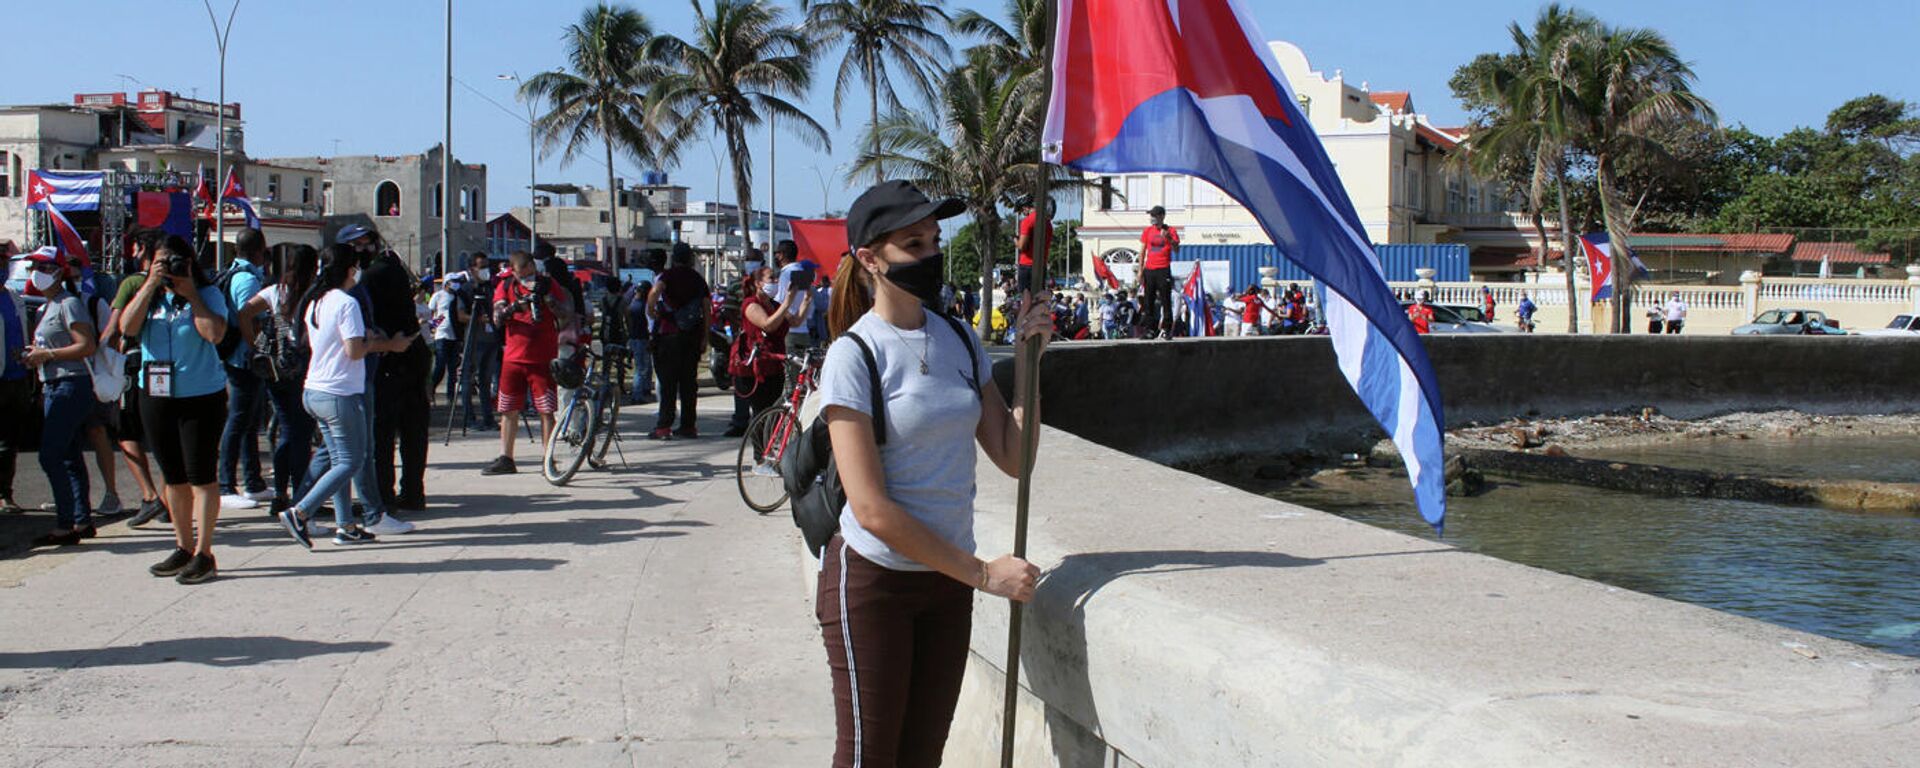 Manifestación contra el bloqueo de EEUU a Cuba en La Habana - Sputnik Mundo, 1920, 25.05.2021